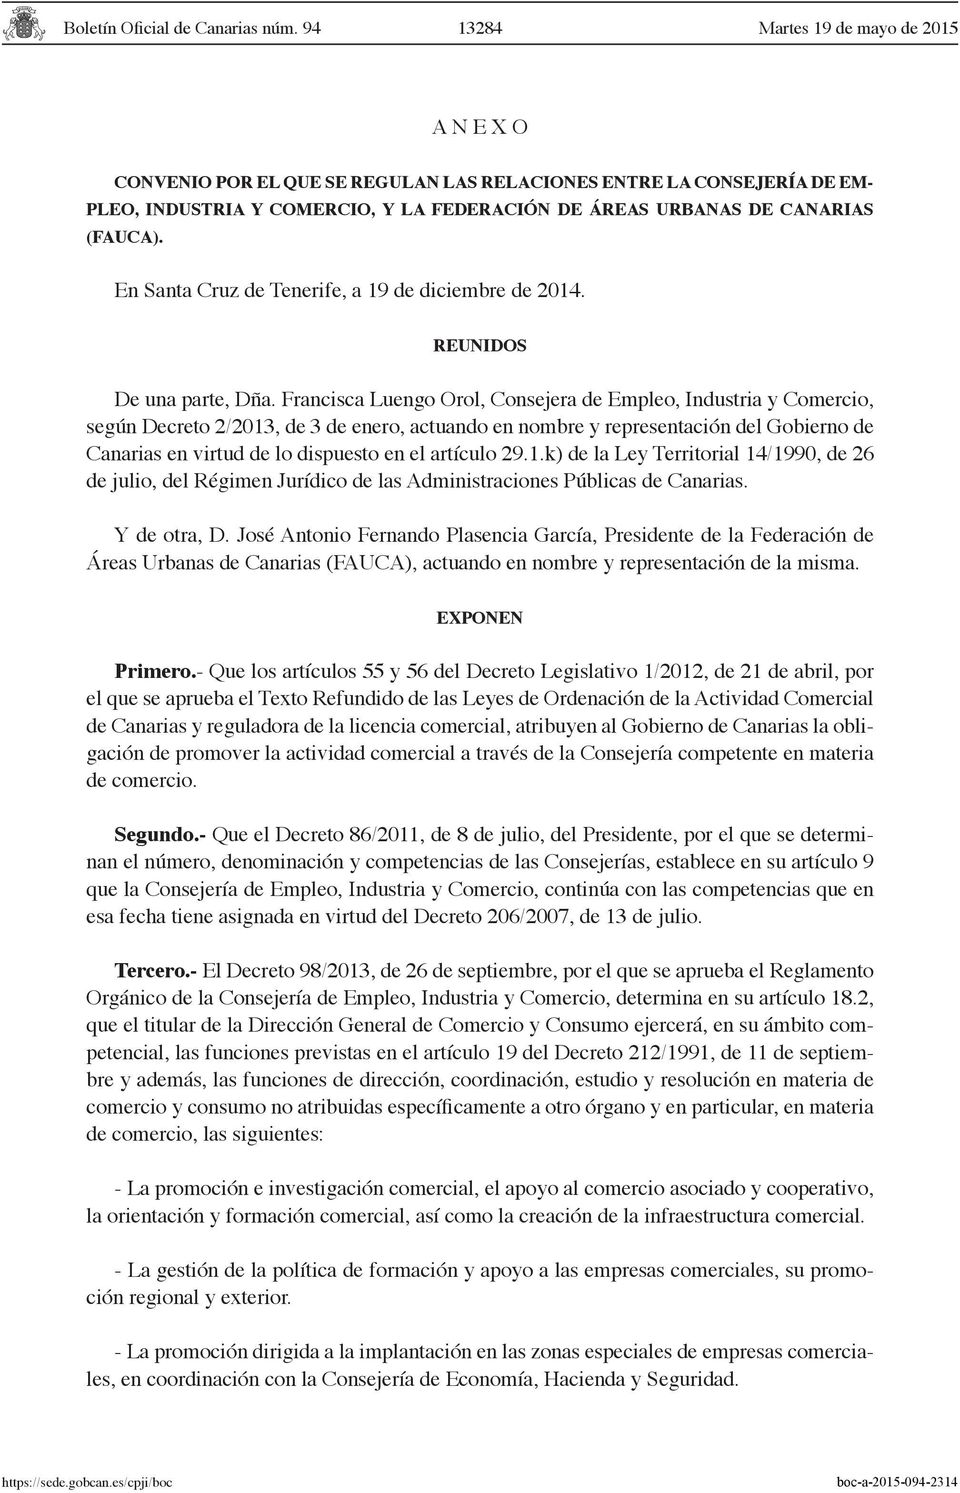 Francisca Luengo Orol, Consejera de Empleo, Industria y Comercio, según Decreto 2/2013, de 3 de enero, actuando en nombre y representación del Gobierno de Canarias en virtud de lo dispuesto en el